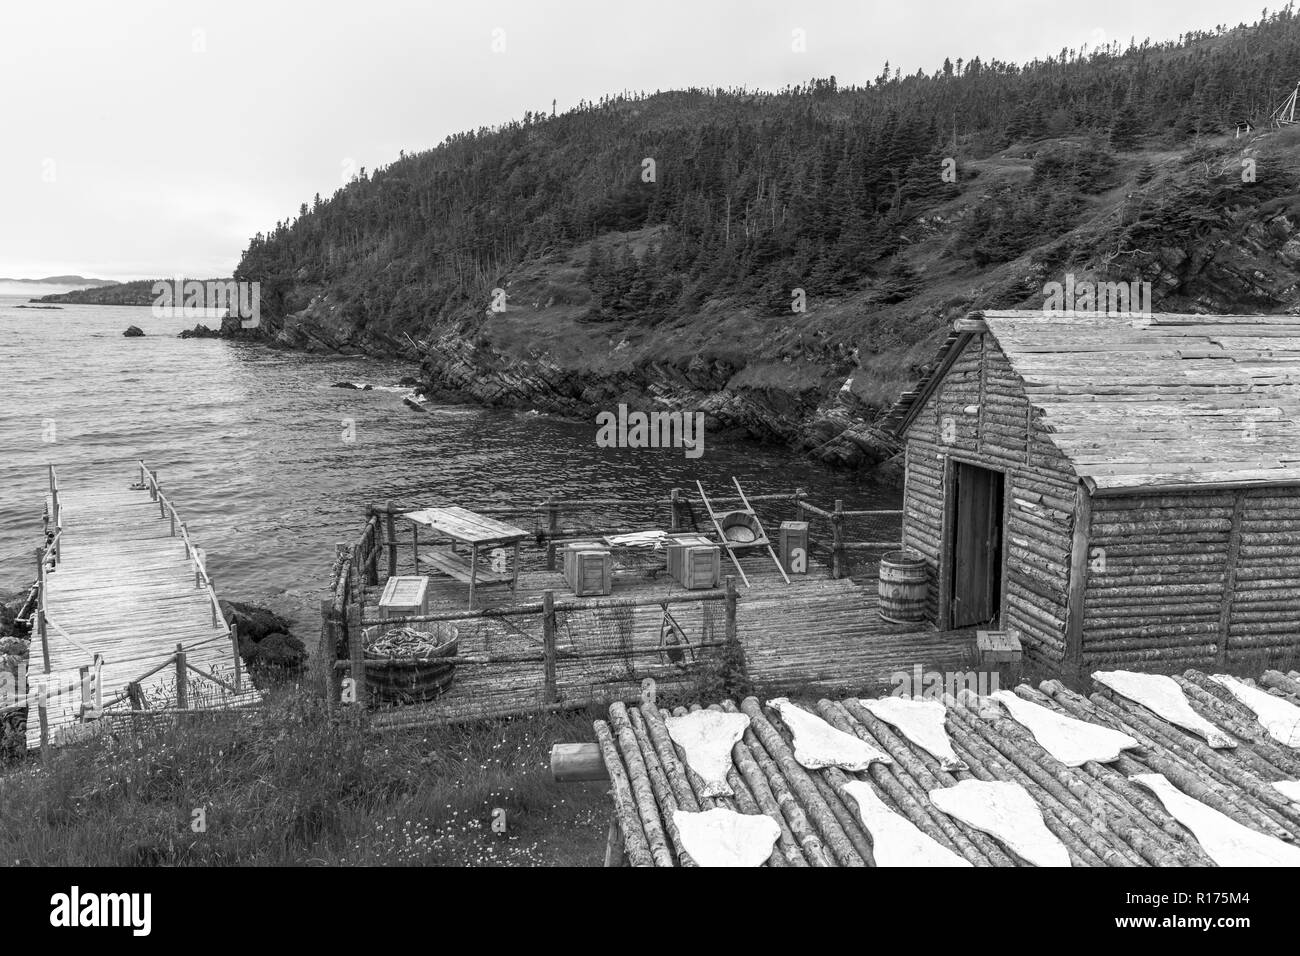 CAPE RANDOM, Neufundland, Kanada - Zufällige Passage Film, Replik des Fischerdorf. Kabeljaufilets sind künstliche Requisiten. Stockfoto